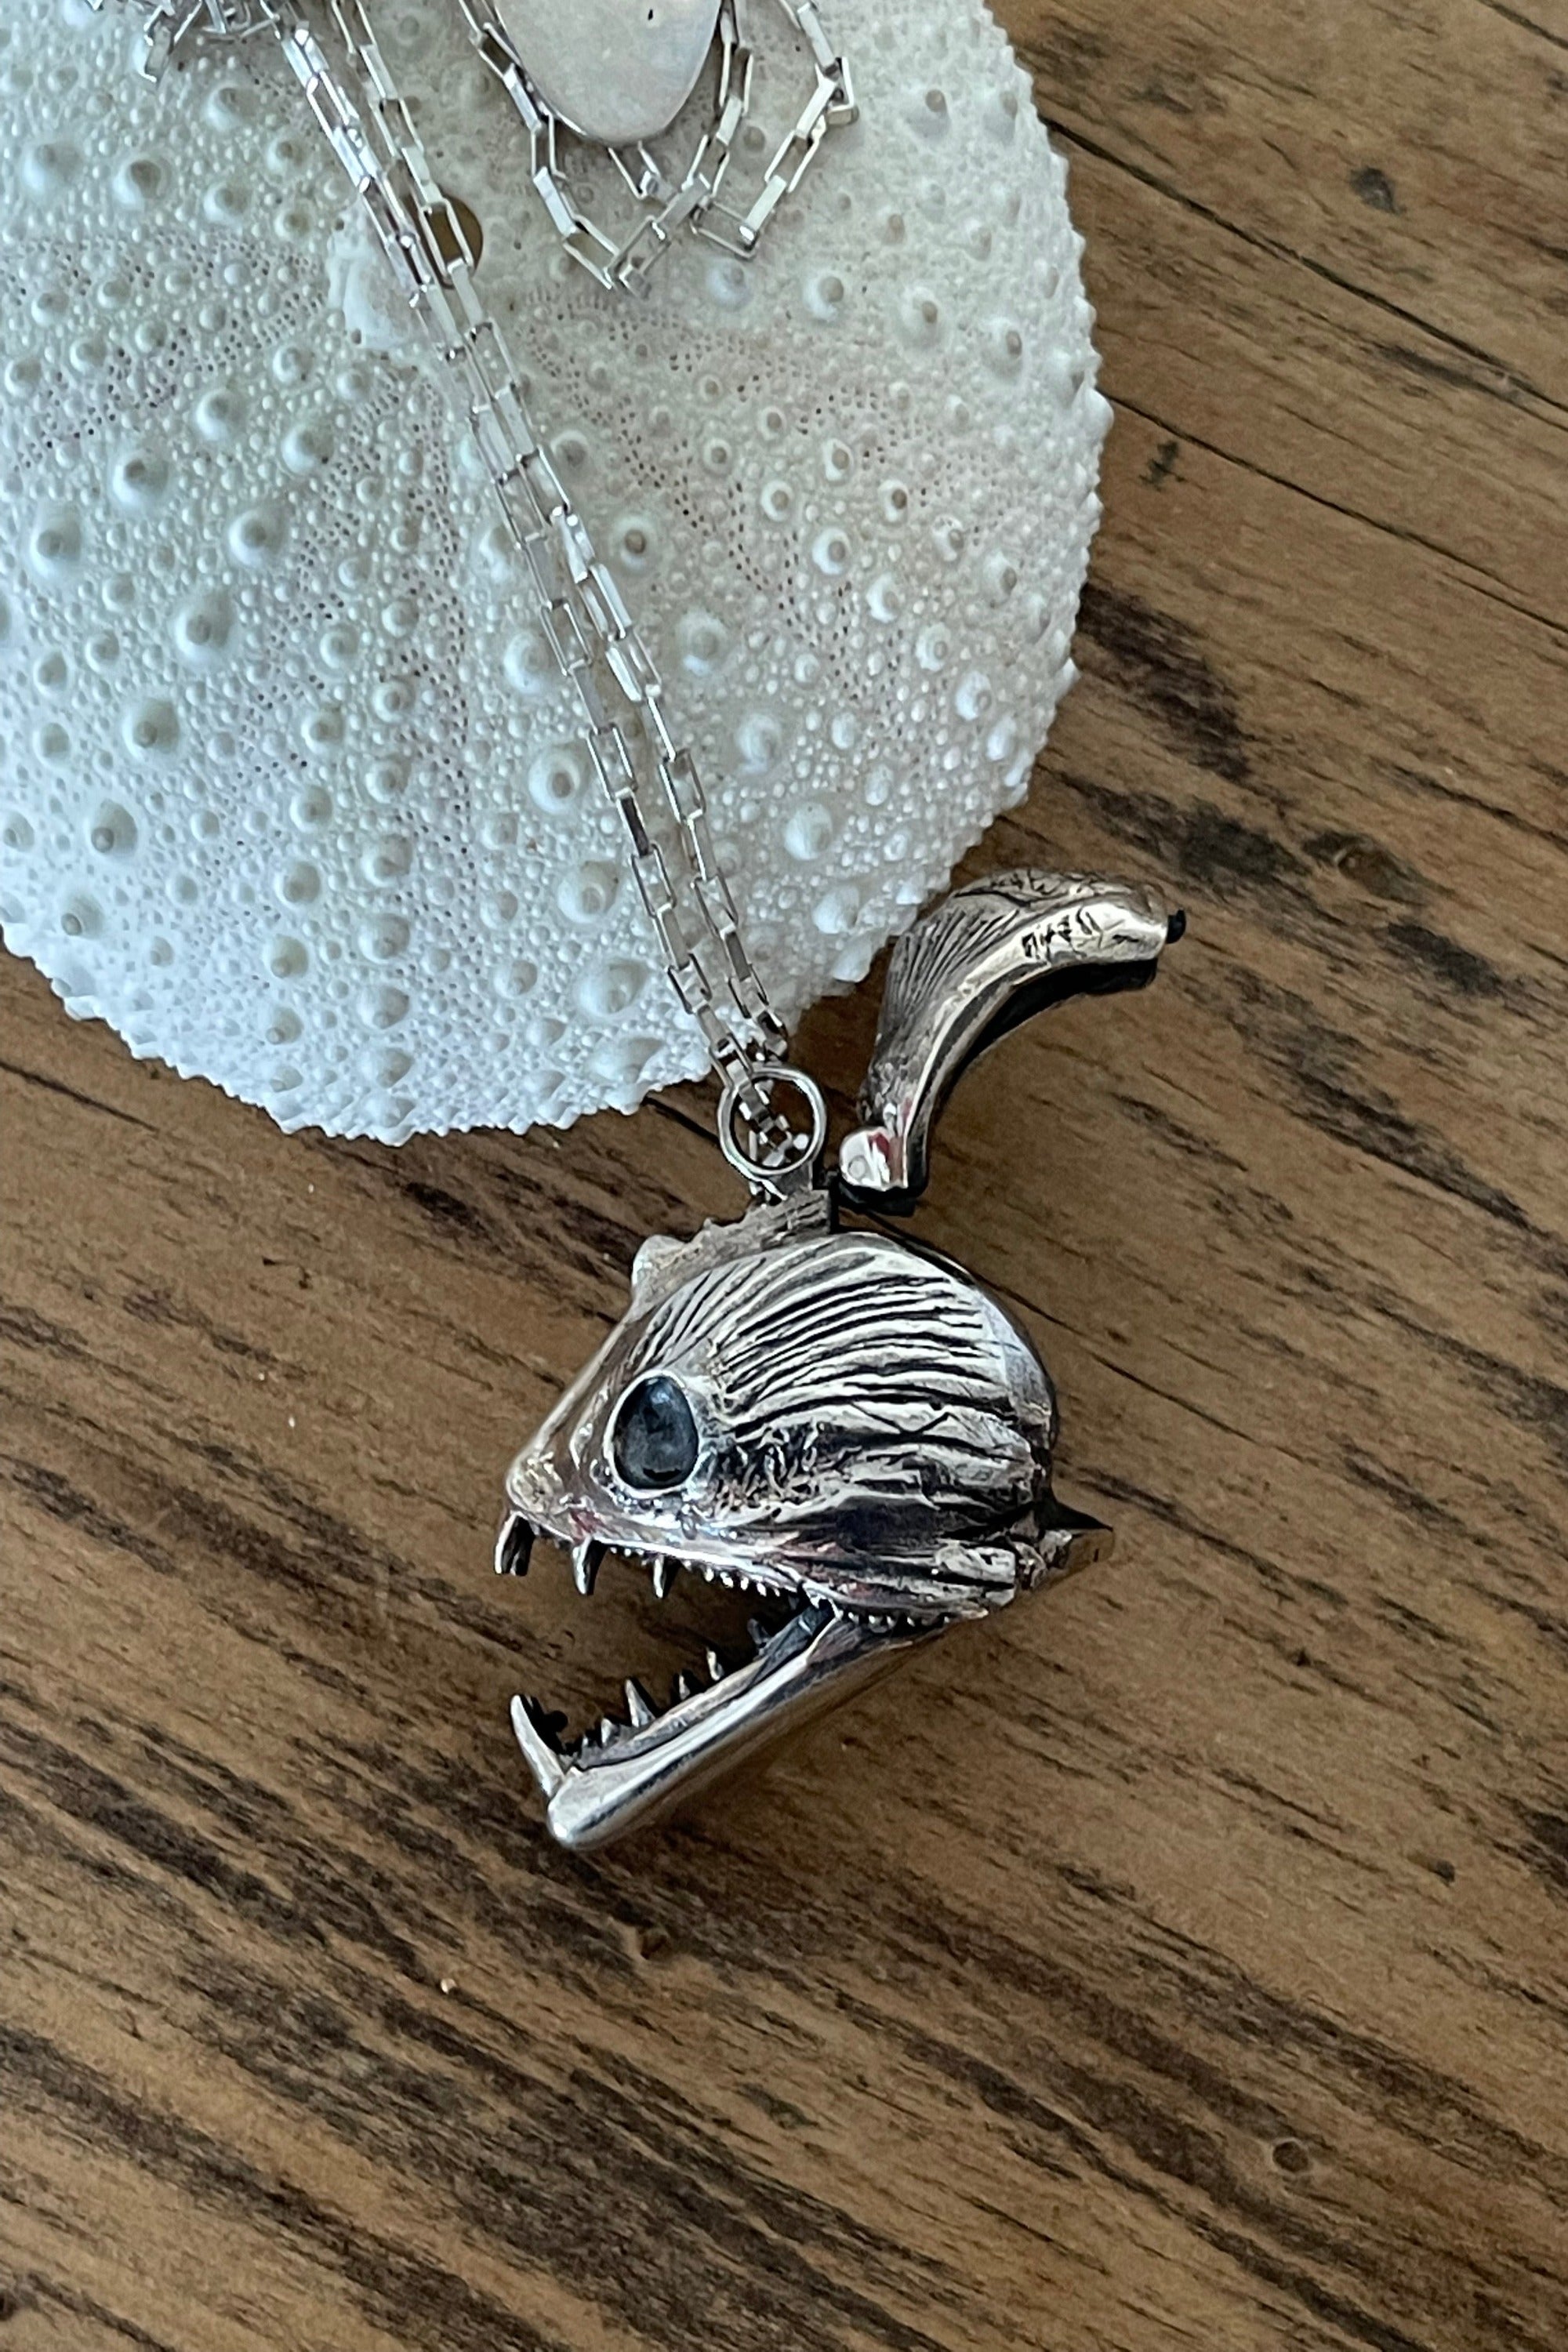 Piranha Skull Necklace